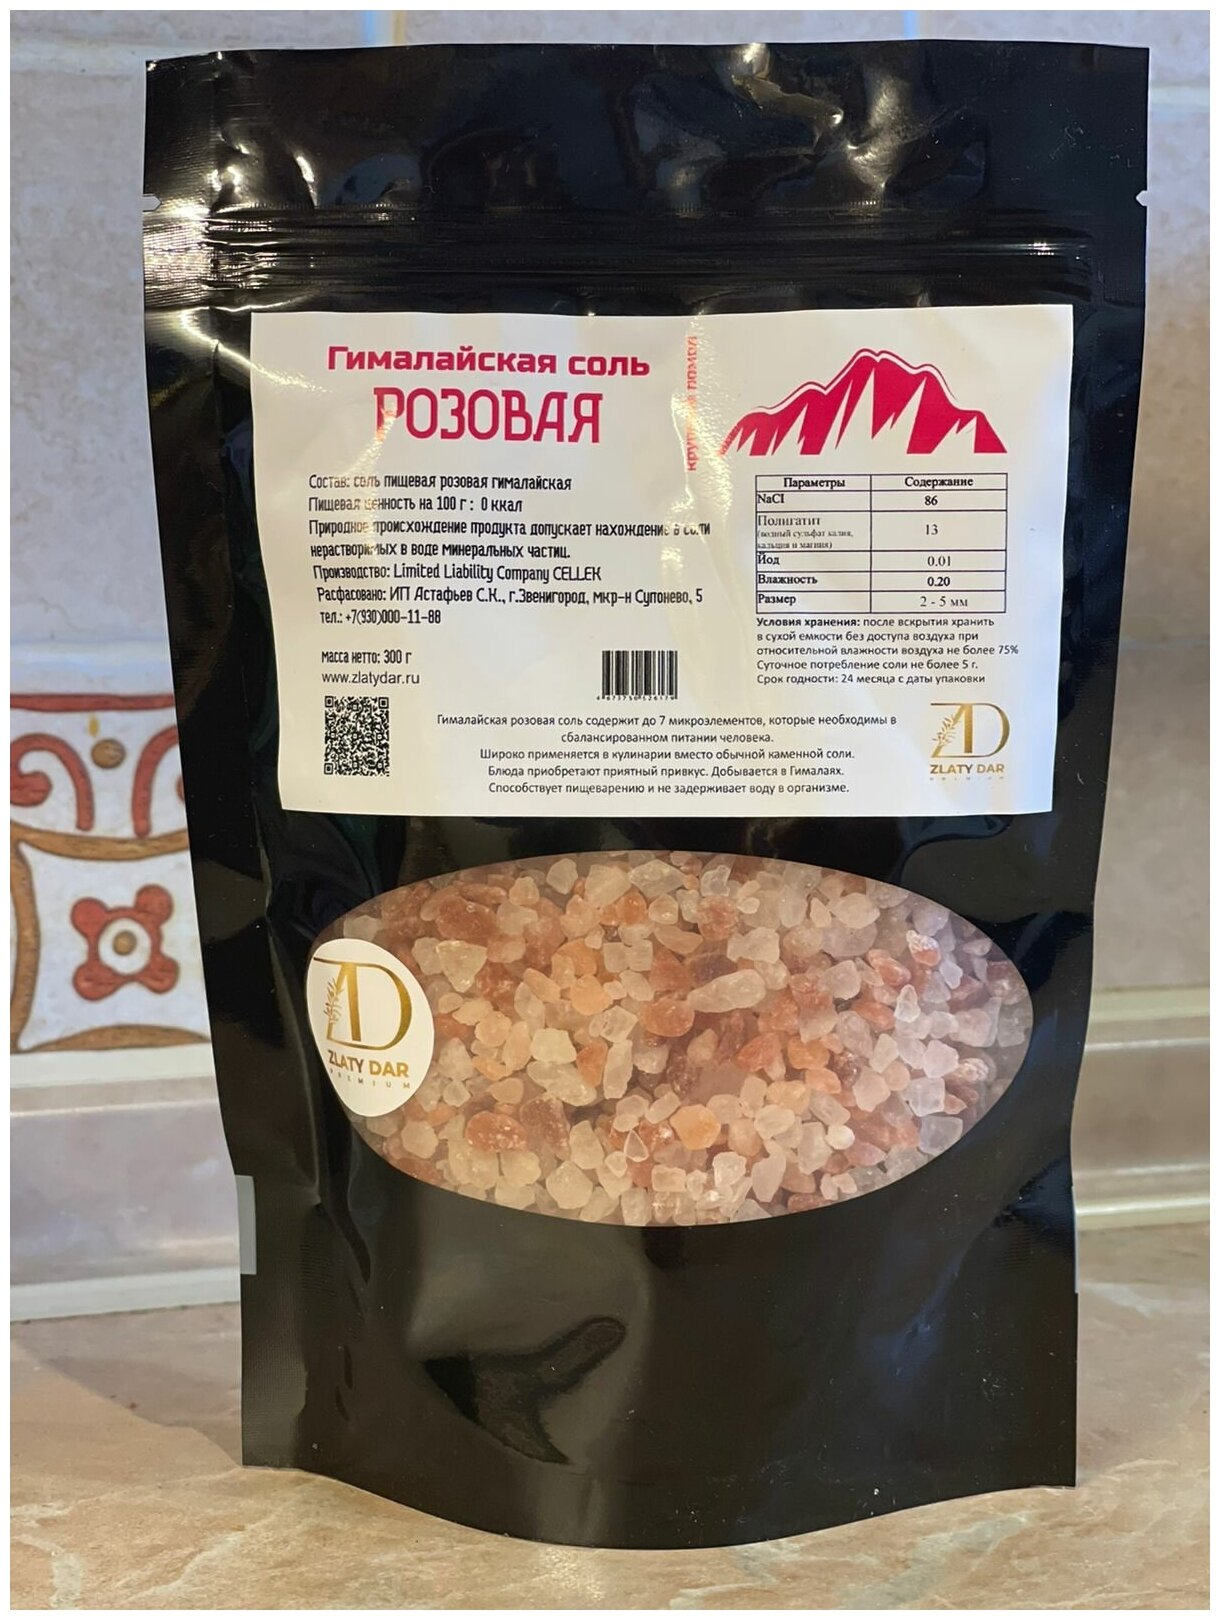 Розовая соль Гималайская крупный помол (2-5 мм) 300 гр.